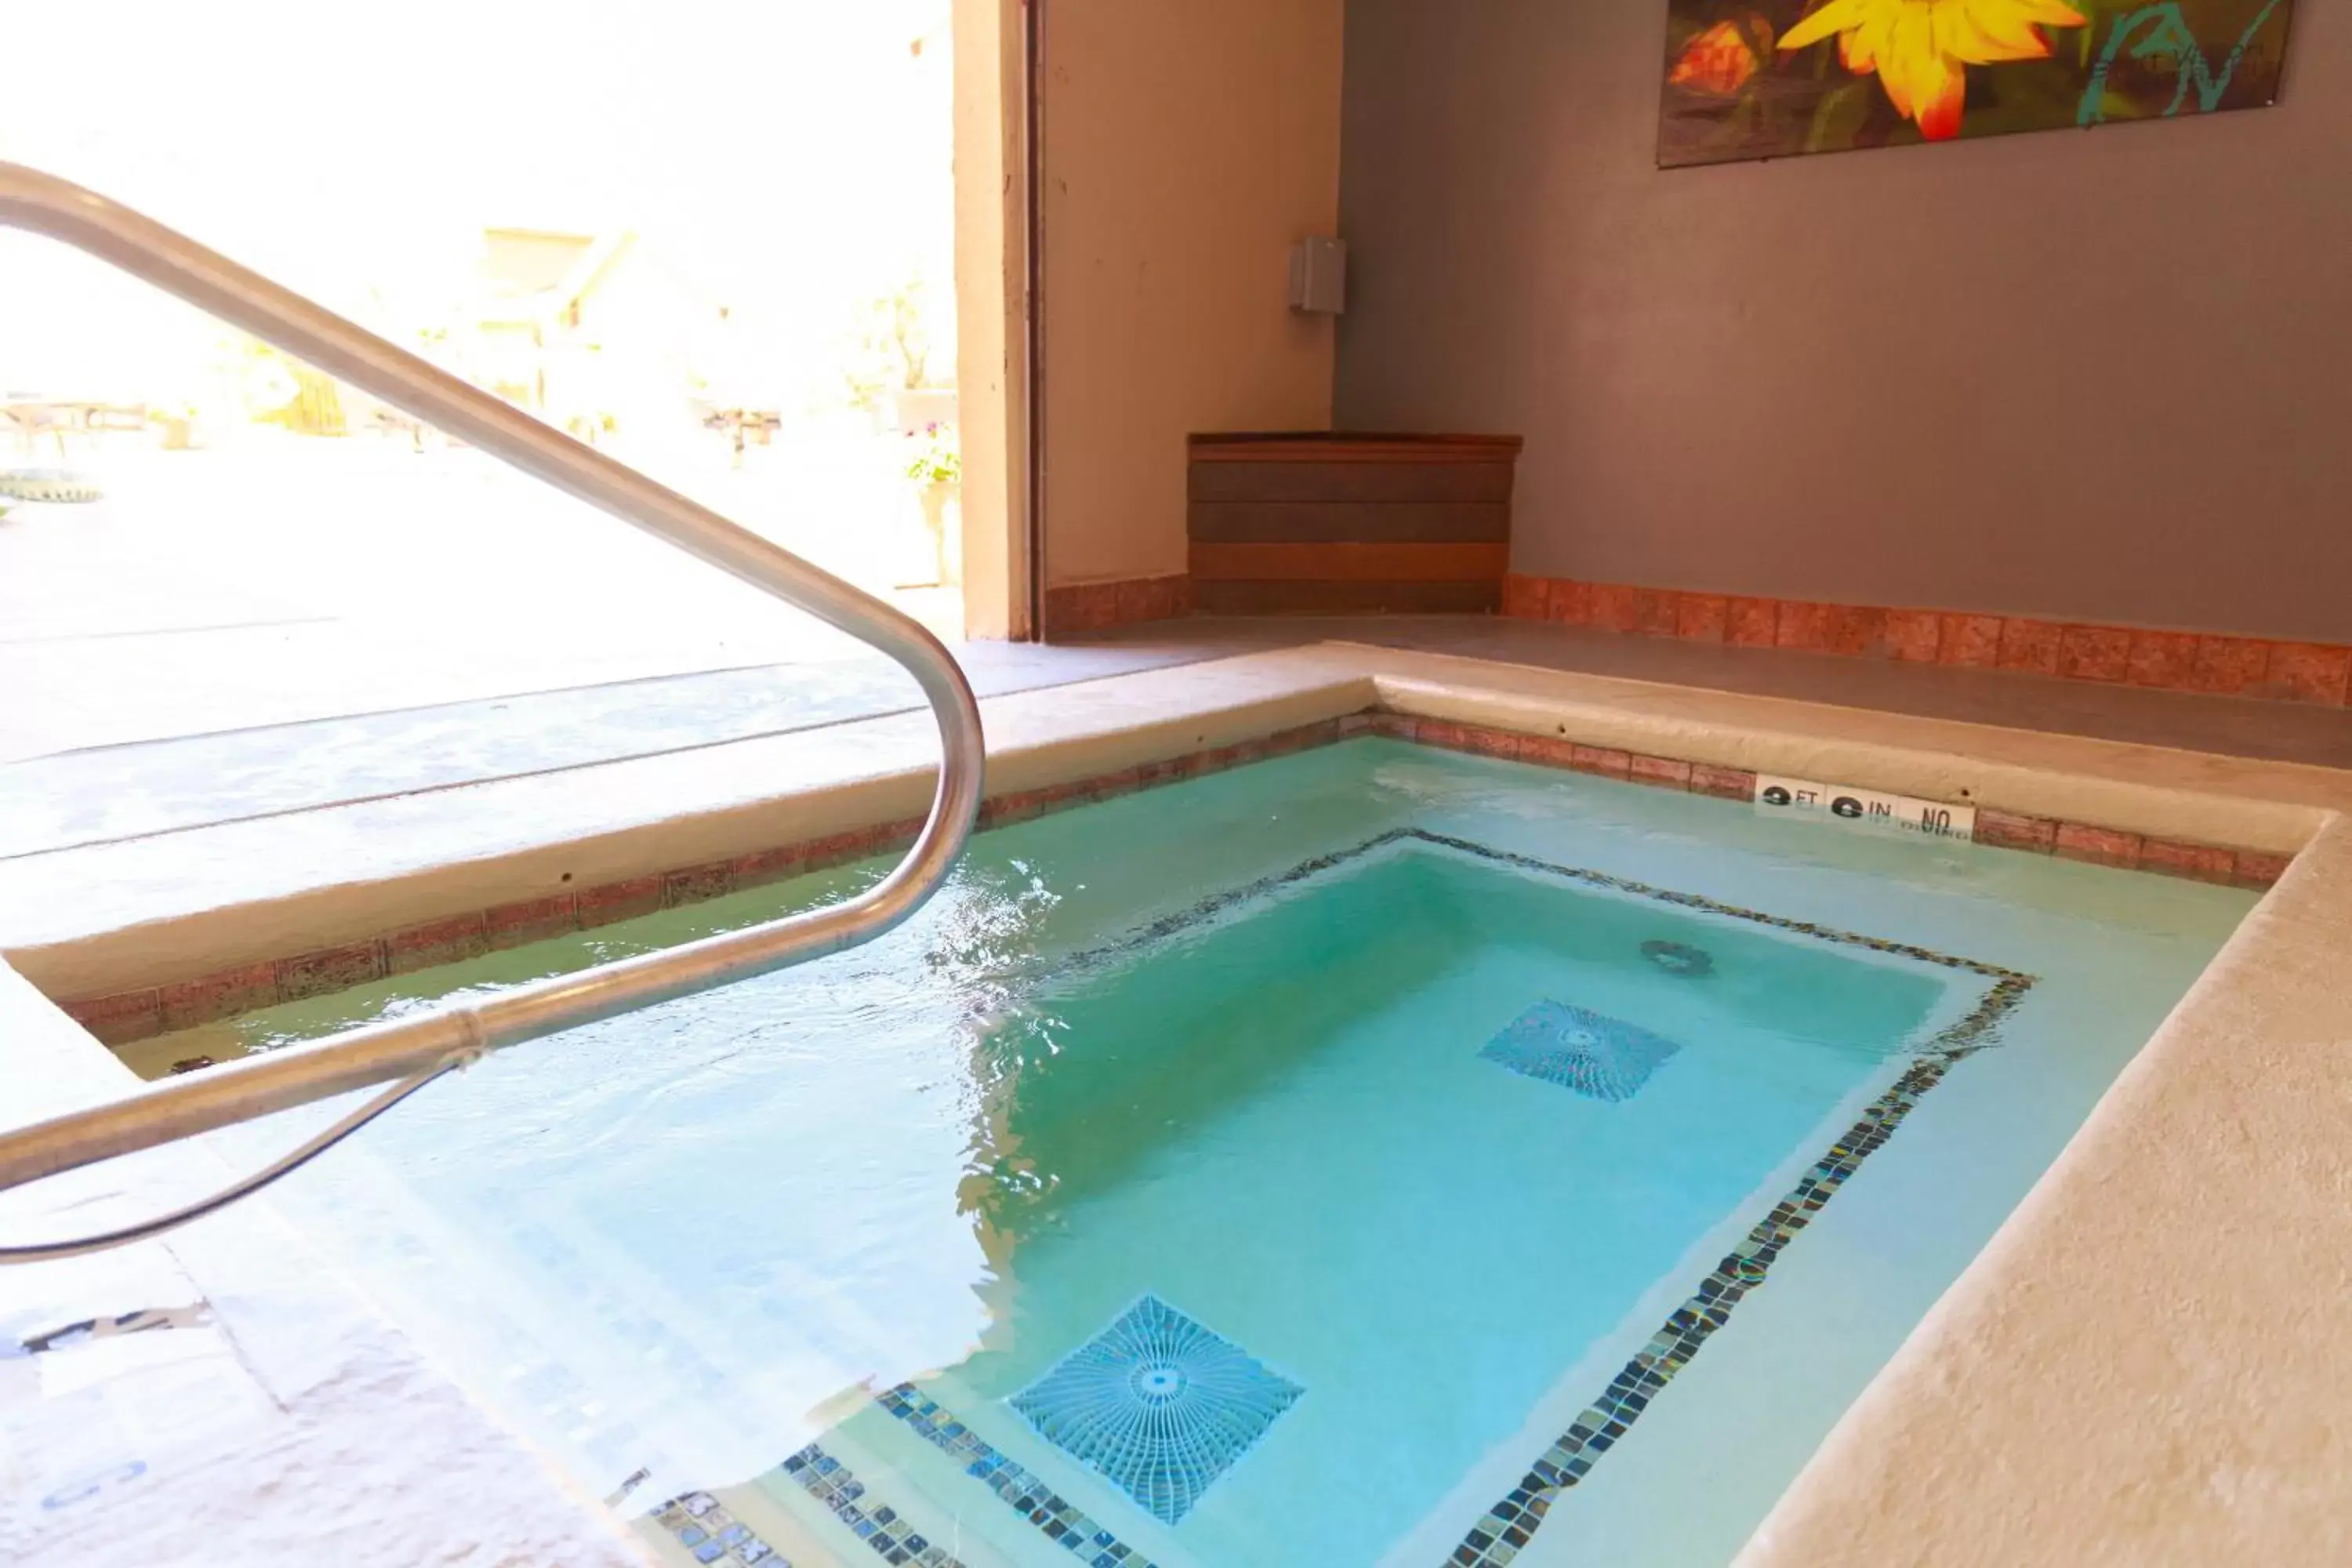 Hot Tub, Swimming Pool in Aarchway Inn